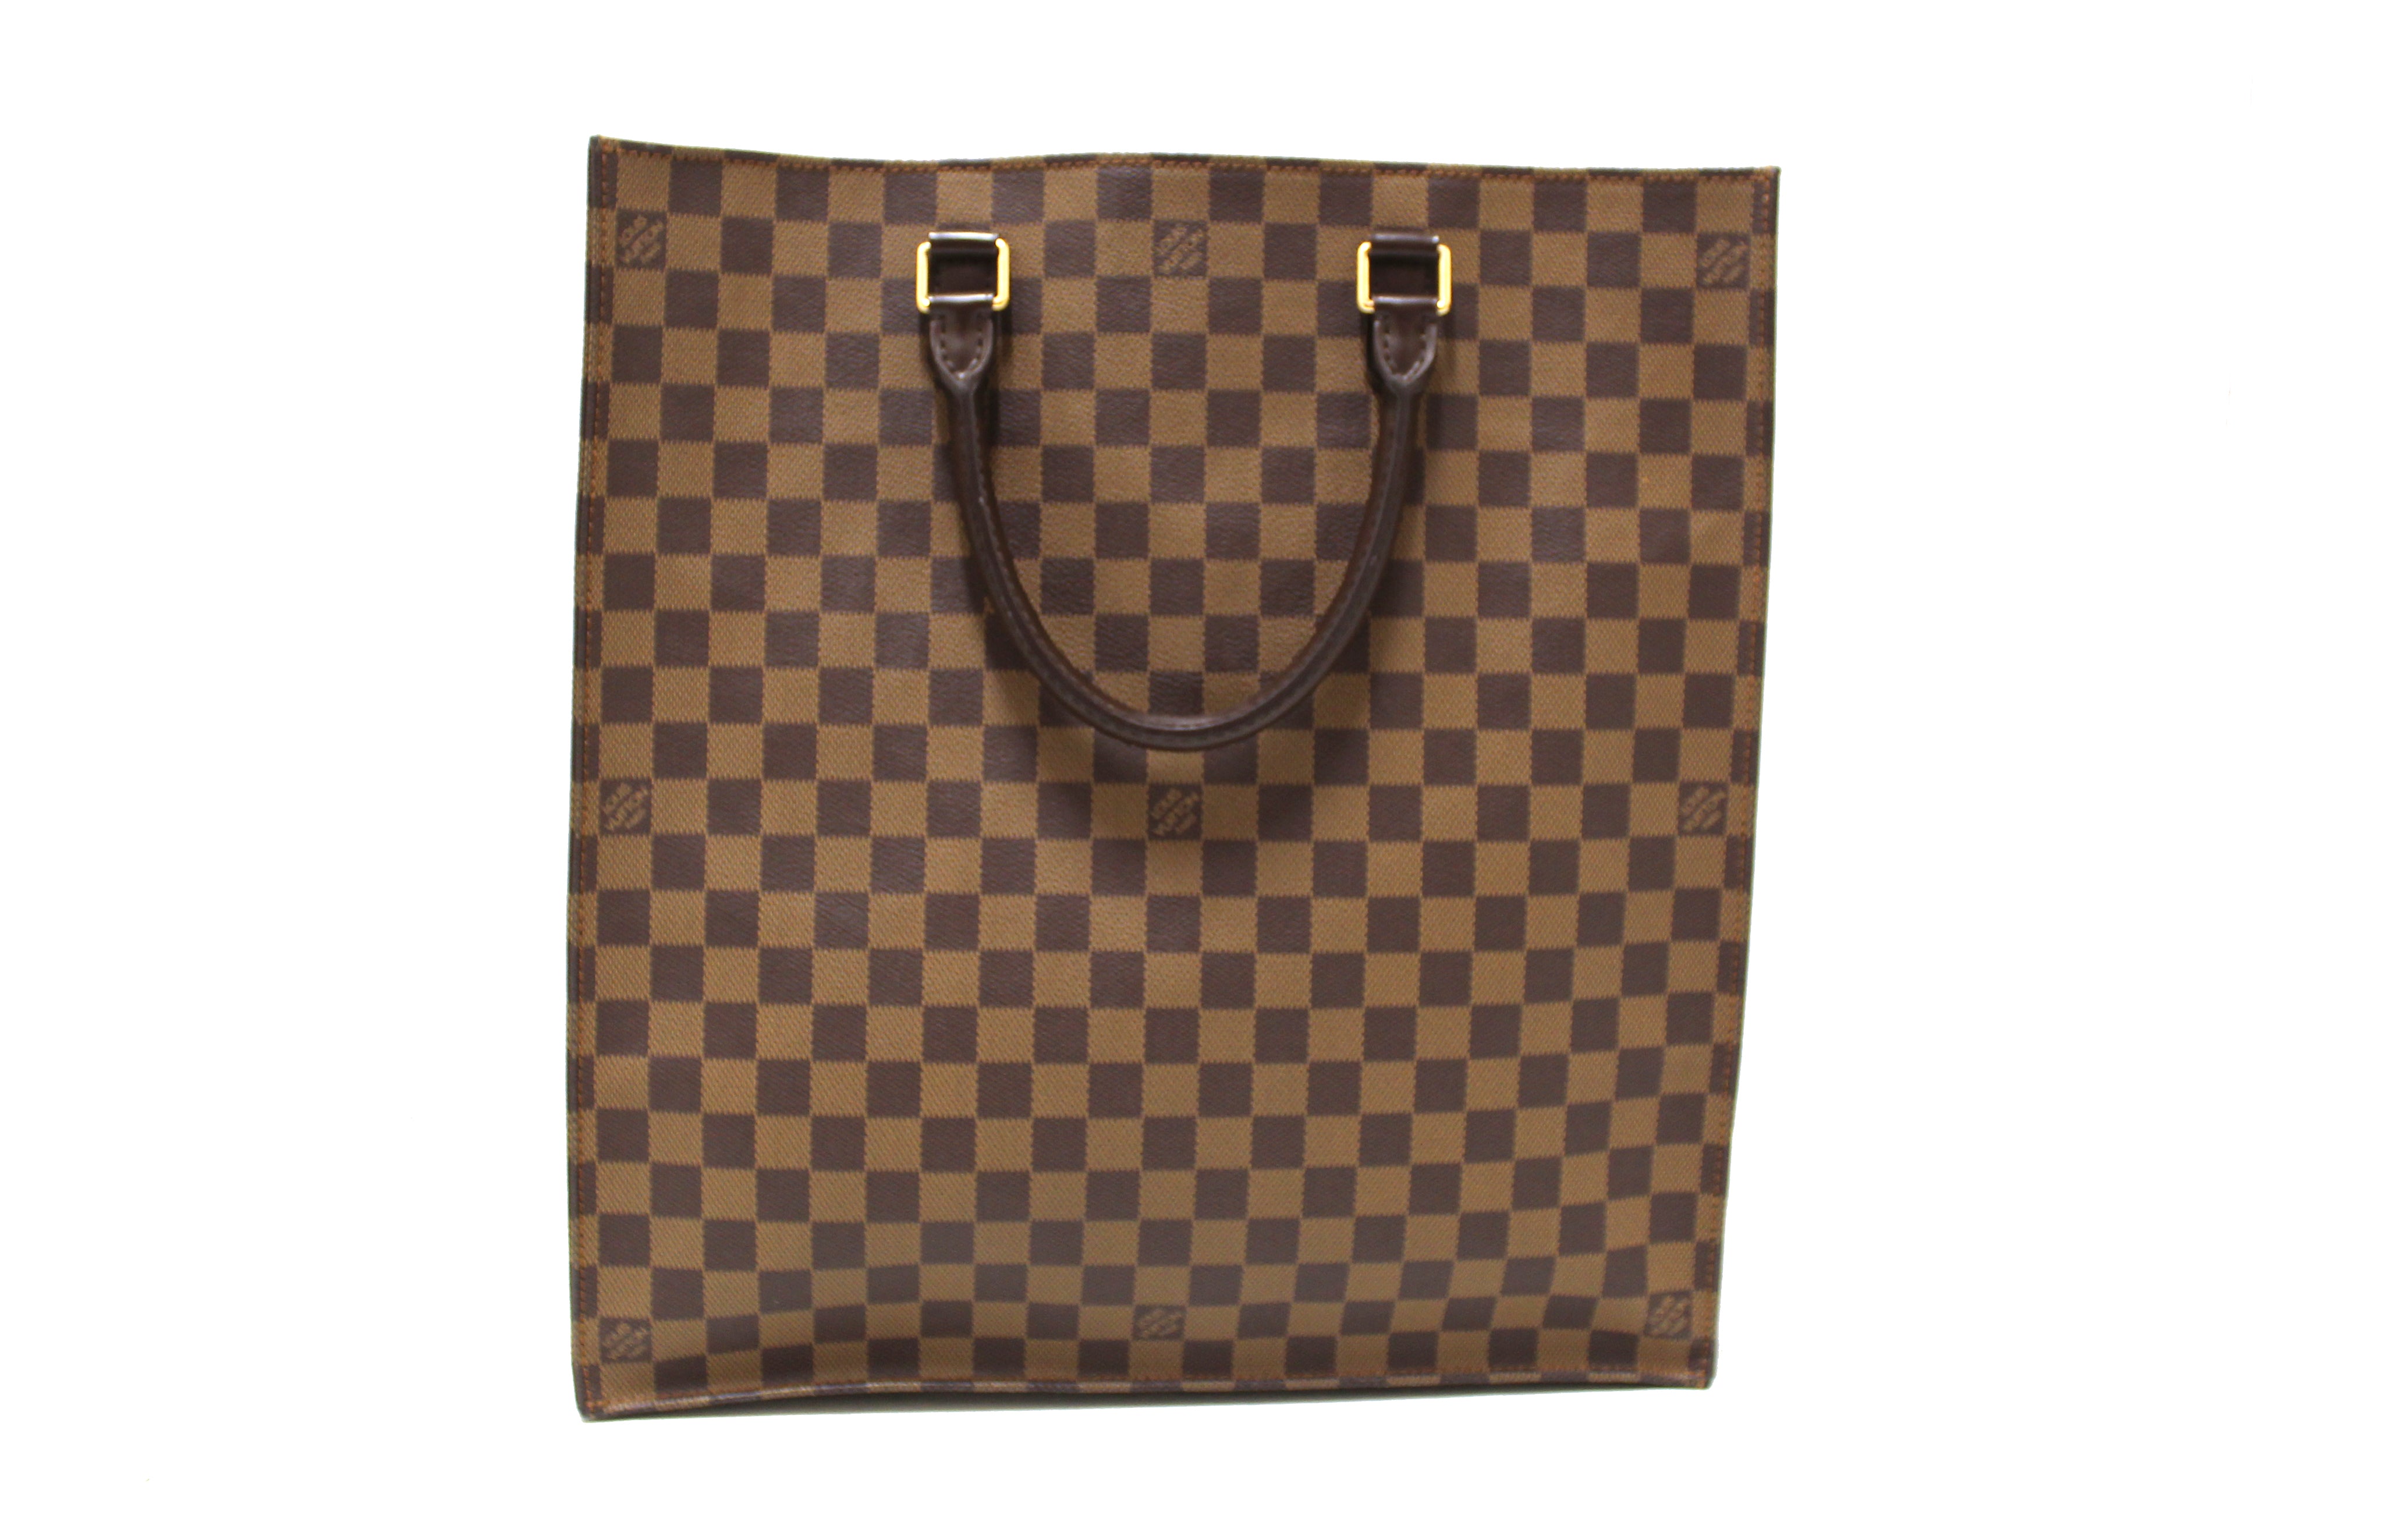 Authentic Louis Vuitton Damier Ebene Sac Plat Handbag